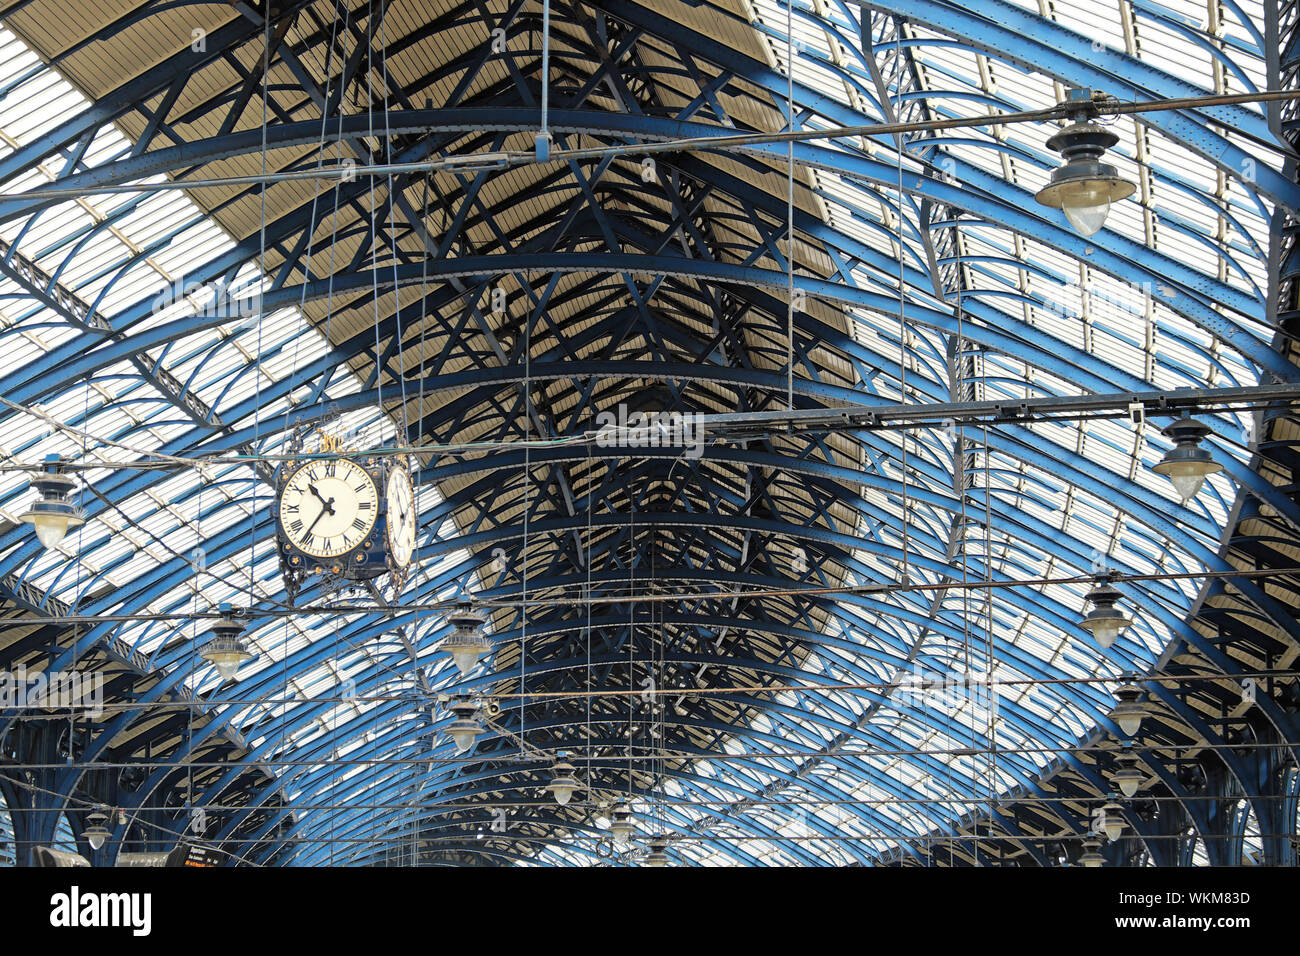 Der Bahnhof von Brighton historische Gebäude Bahnhof Halle Innenansicht Glas und Eisen Dachkonstruktion und Uhr England Großbritannien BRITISCHER KATHY DEWITT Stockfoto